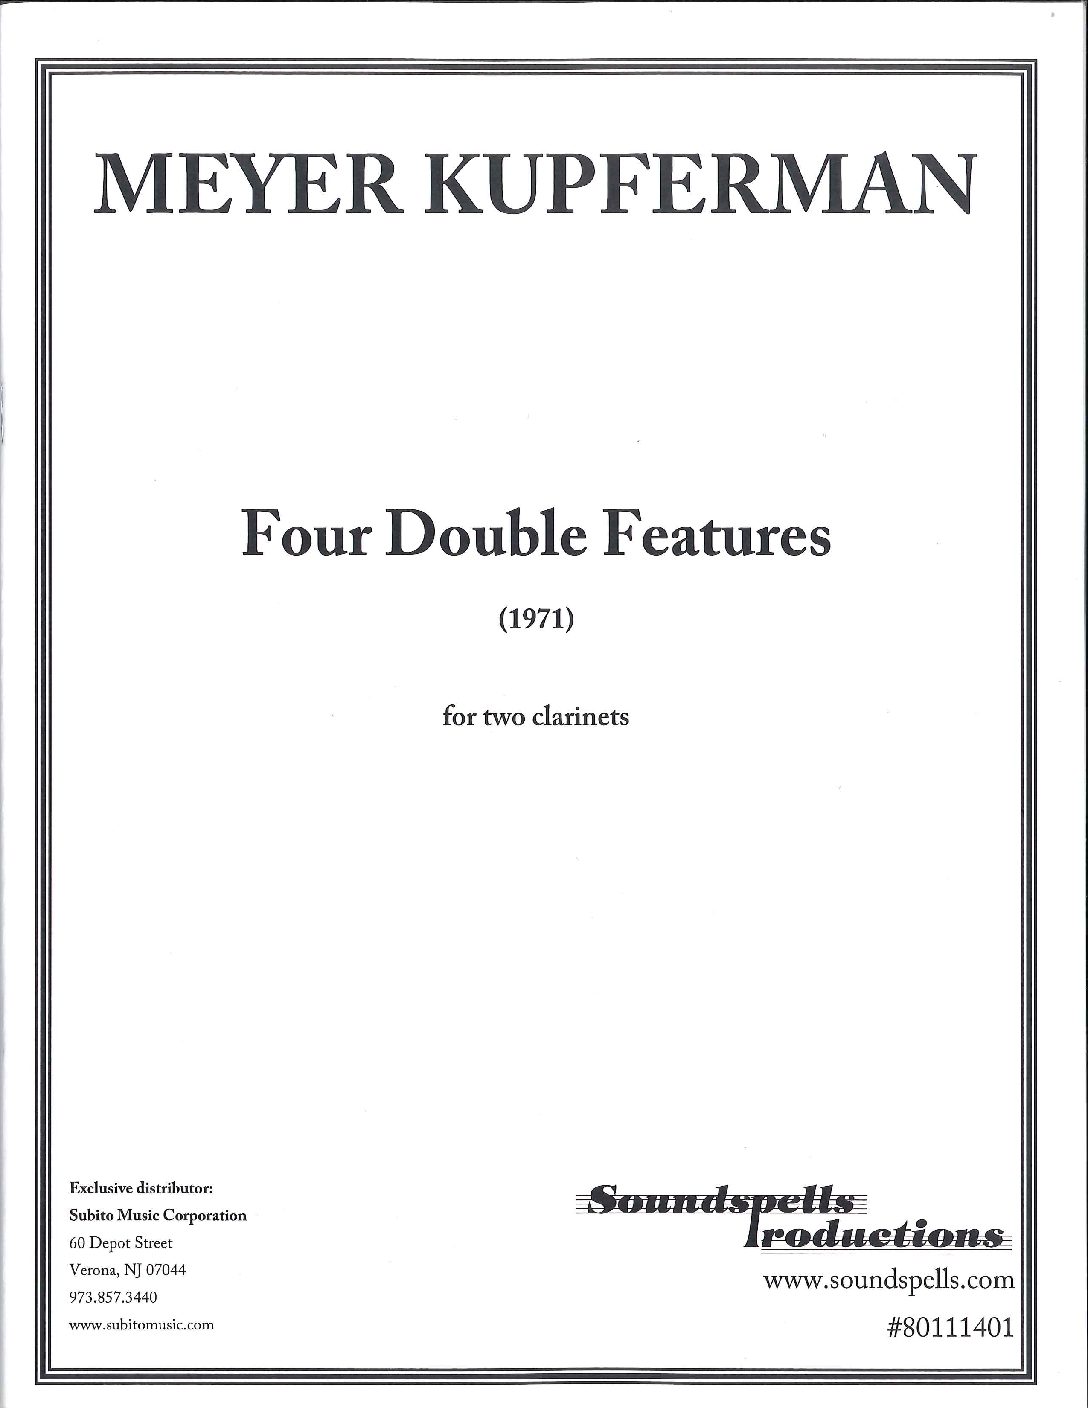 4つのダブル・フィーチャー（メイヤー・クプファーマン）（クラリネット二重奏）【Four Double Features】